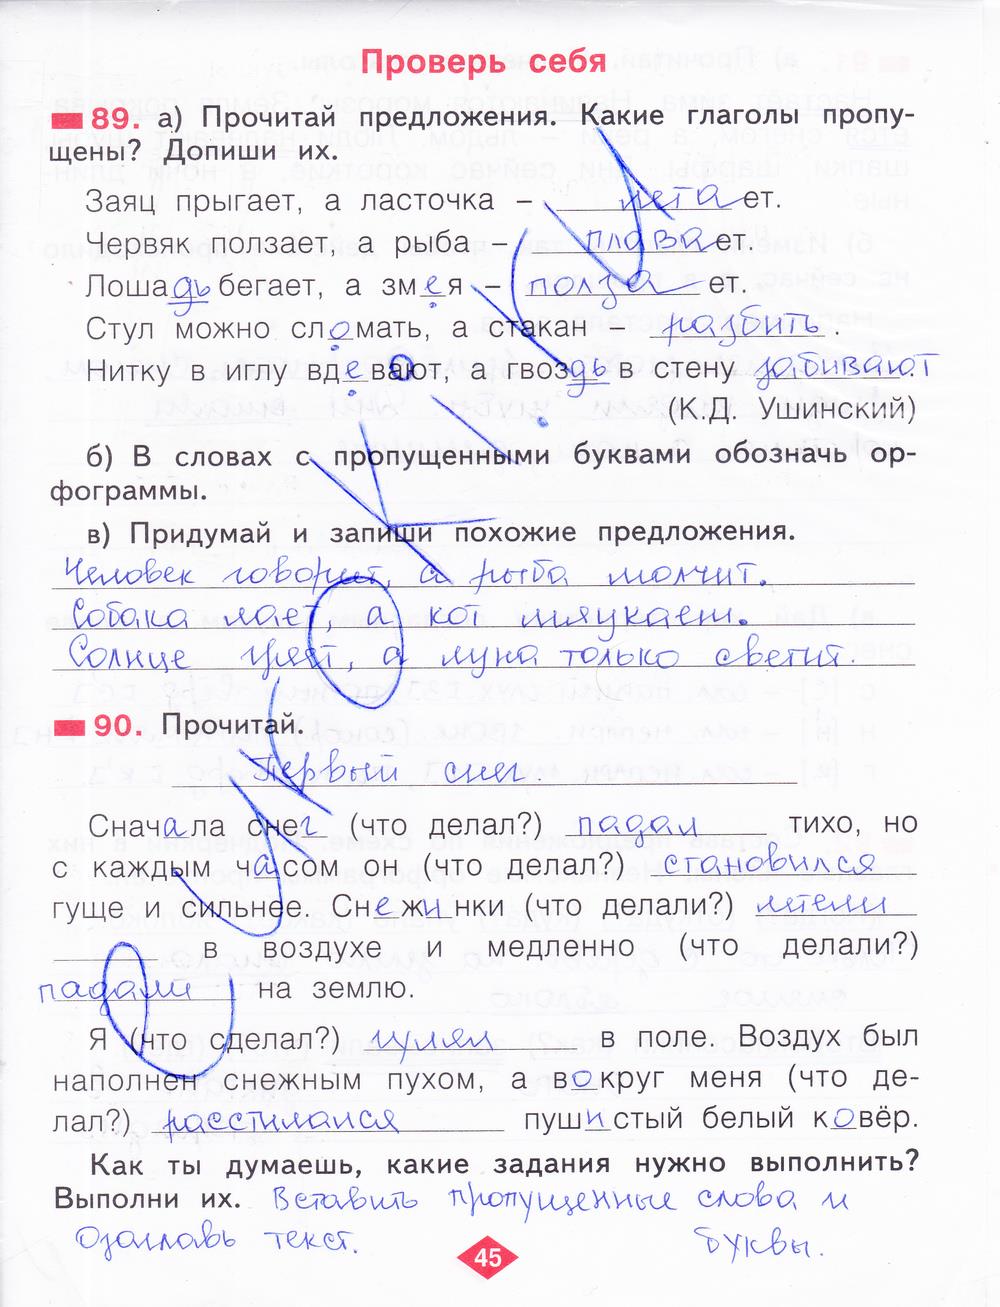 гдз 2 класс рабочая тетрадь часть 2 страница 45 русский язык Яковлева